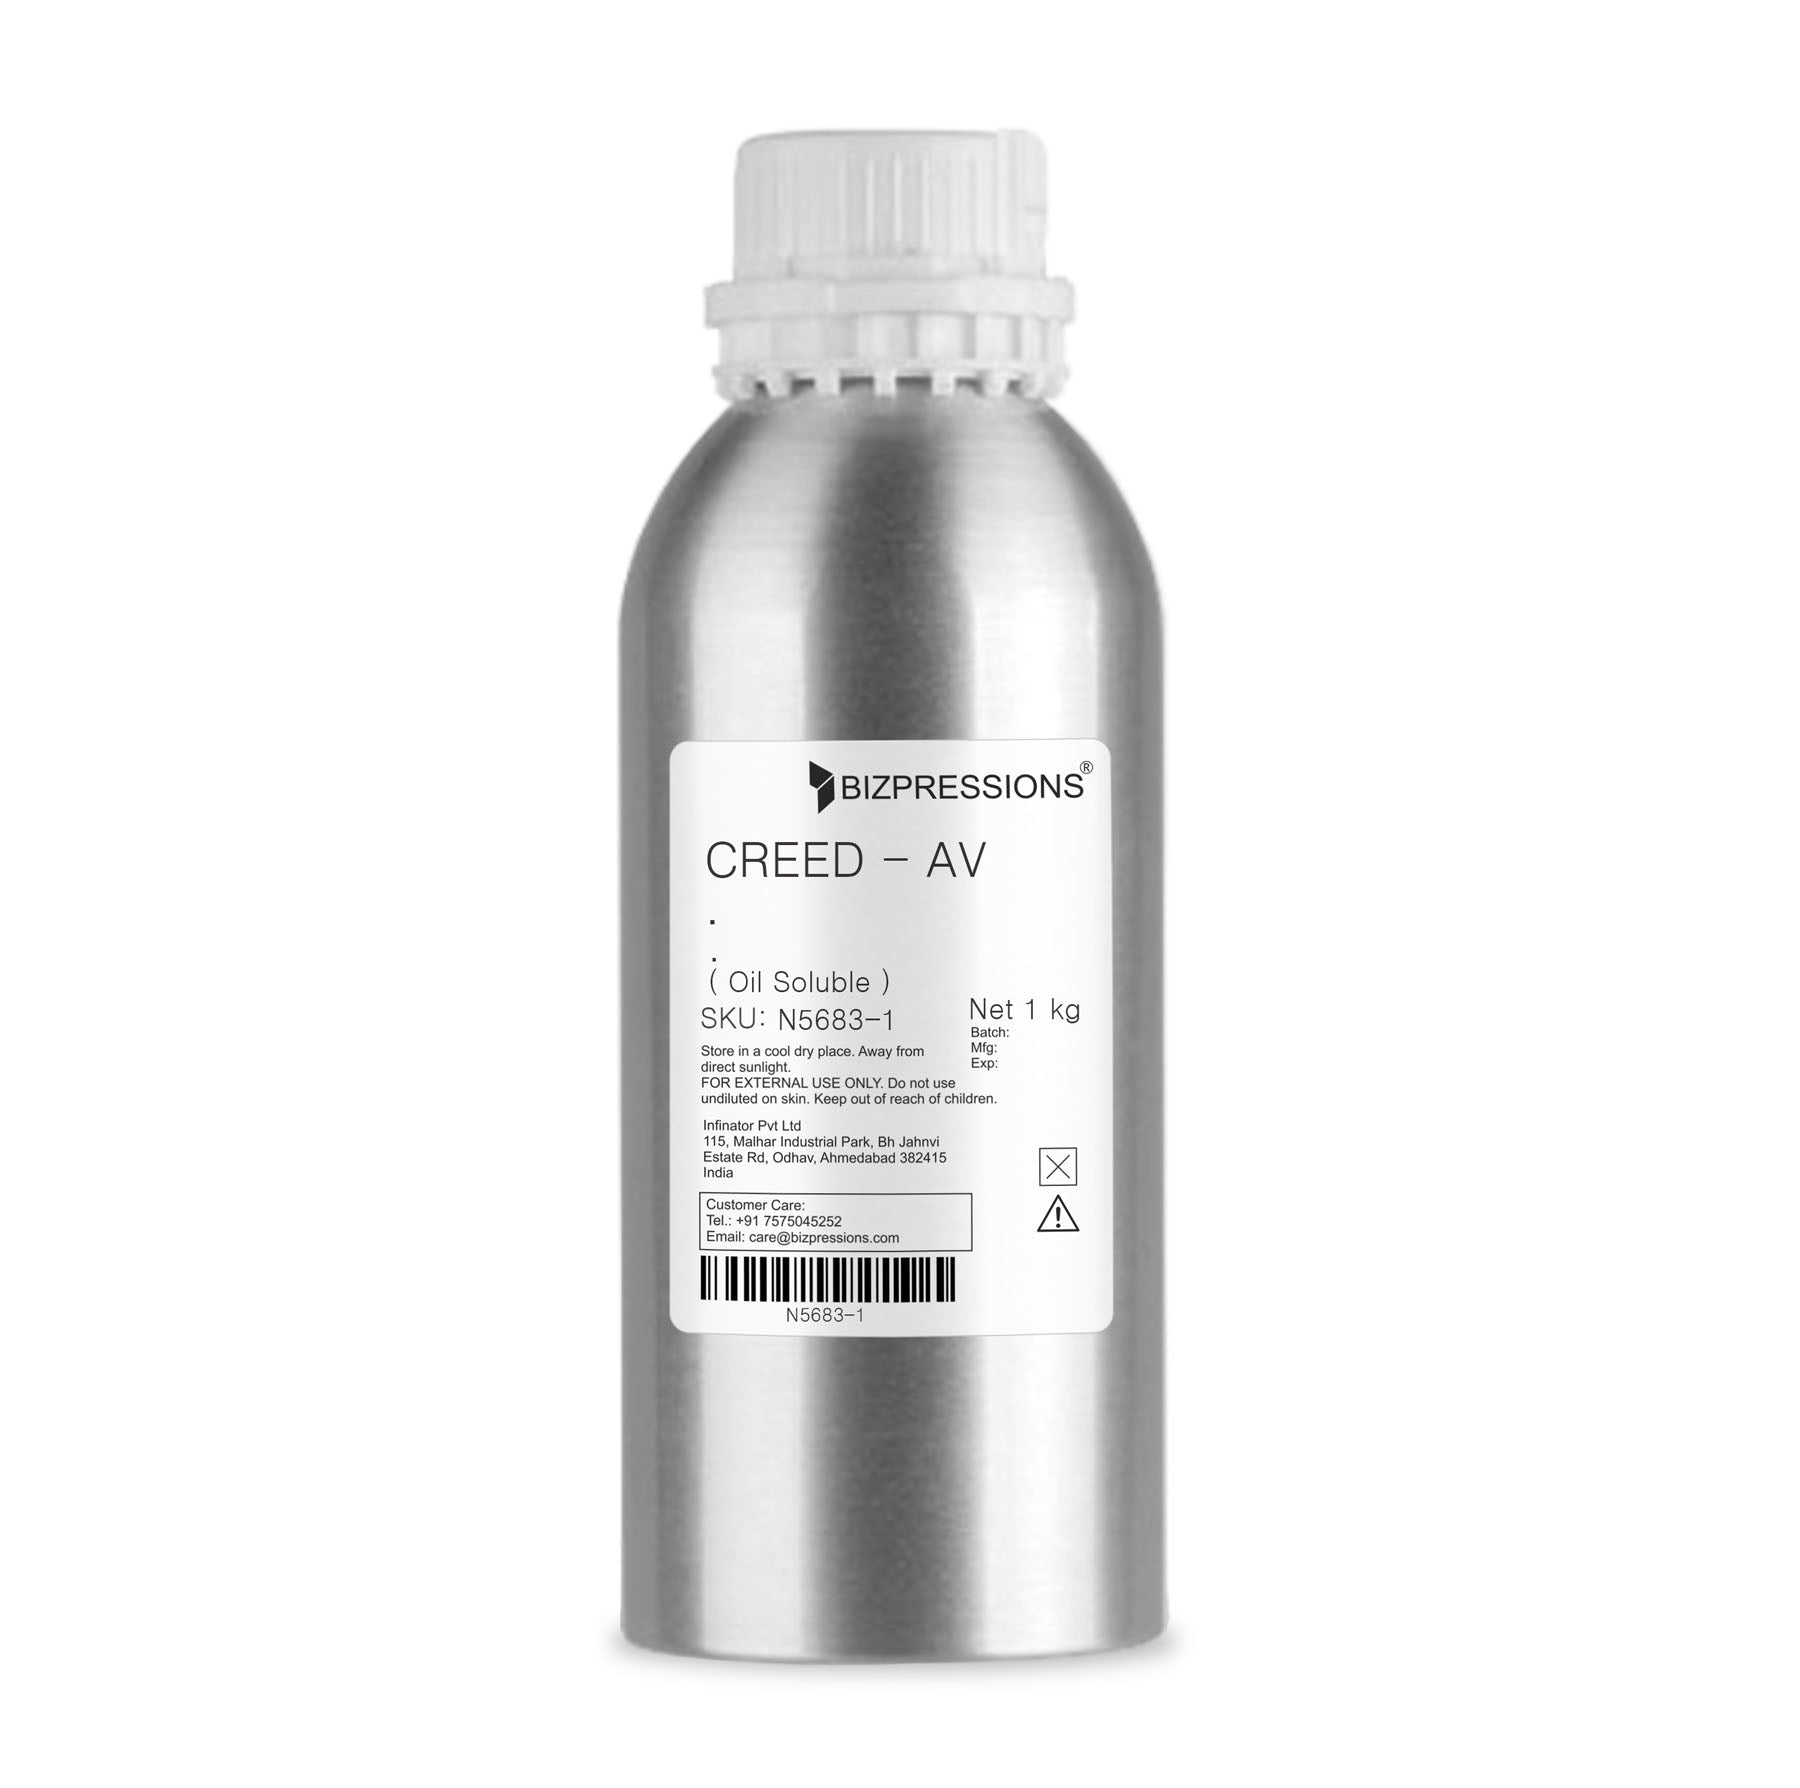 CREED - AV - Fragrance ( Oil Soluble ) - 1 kg